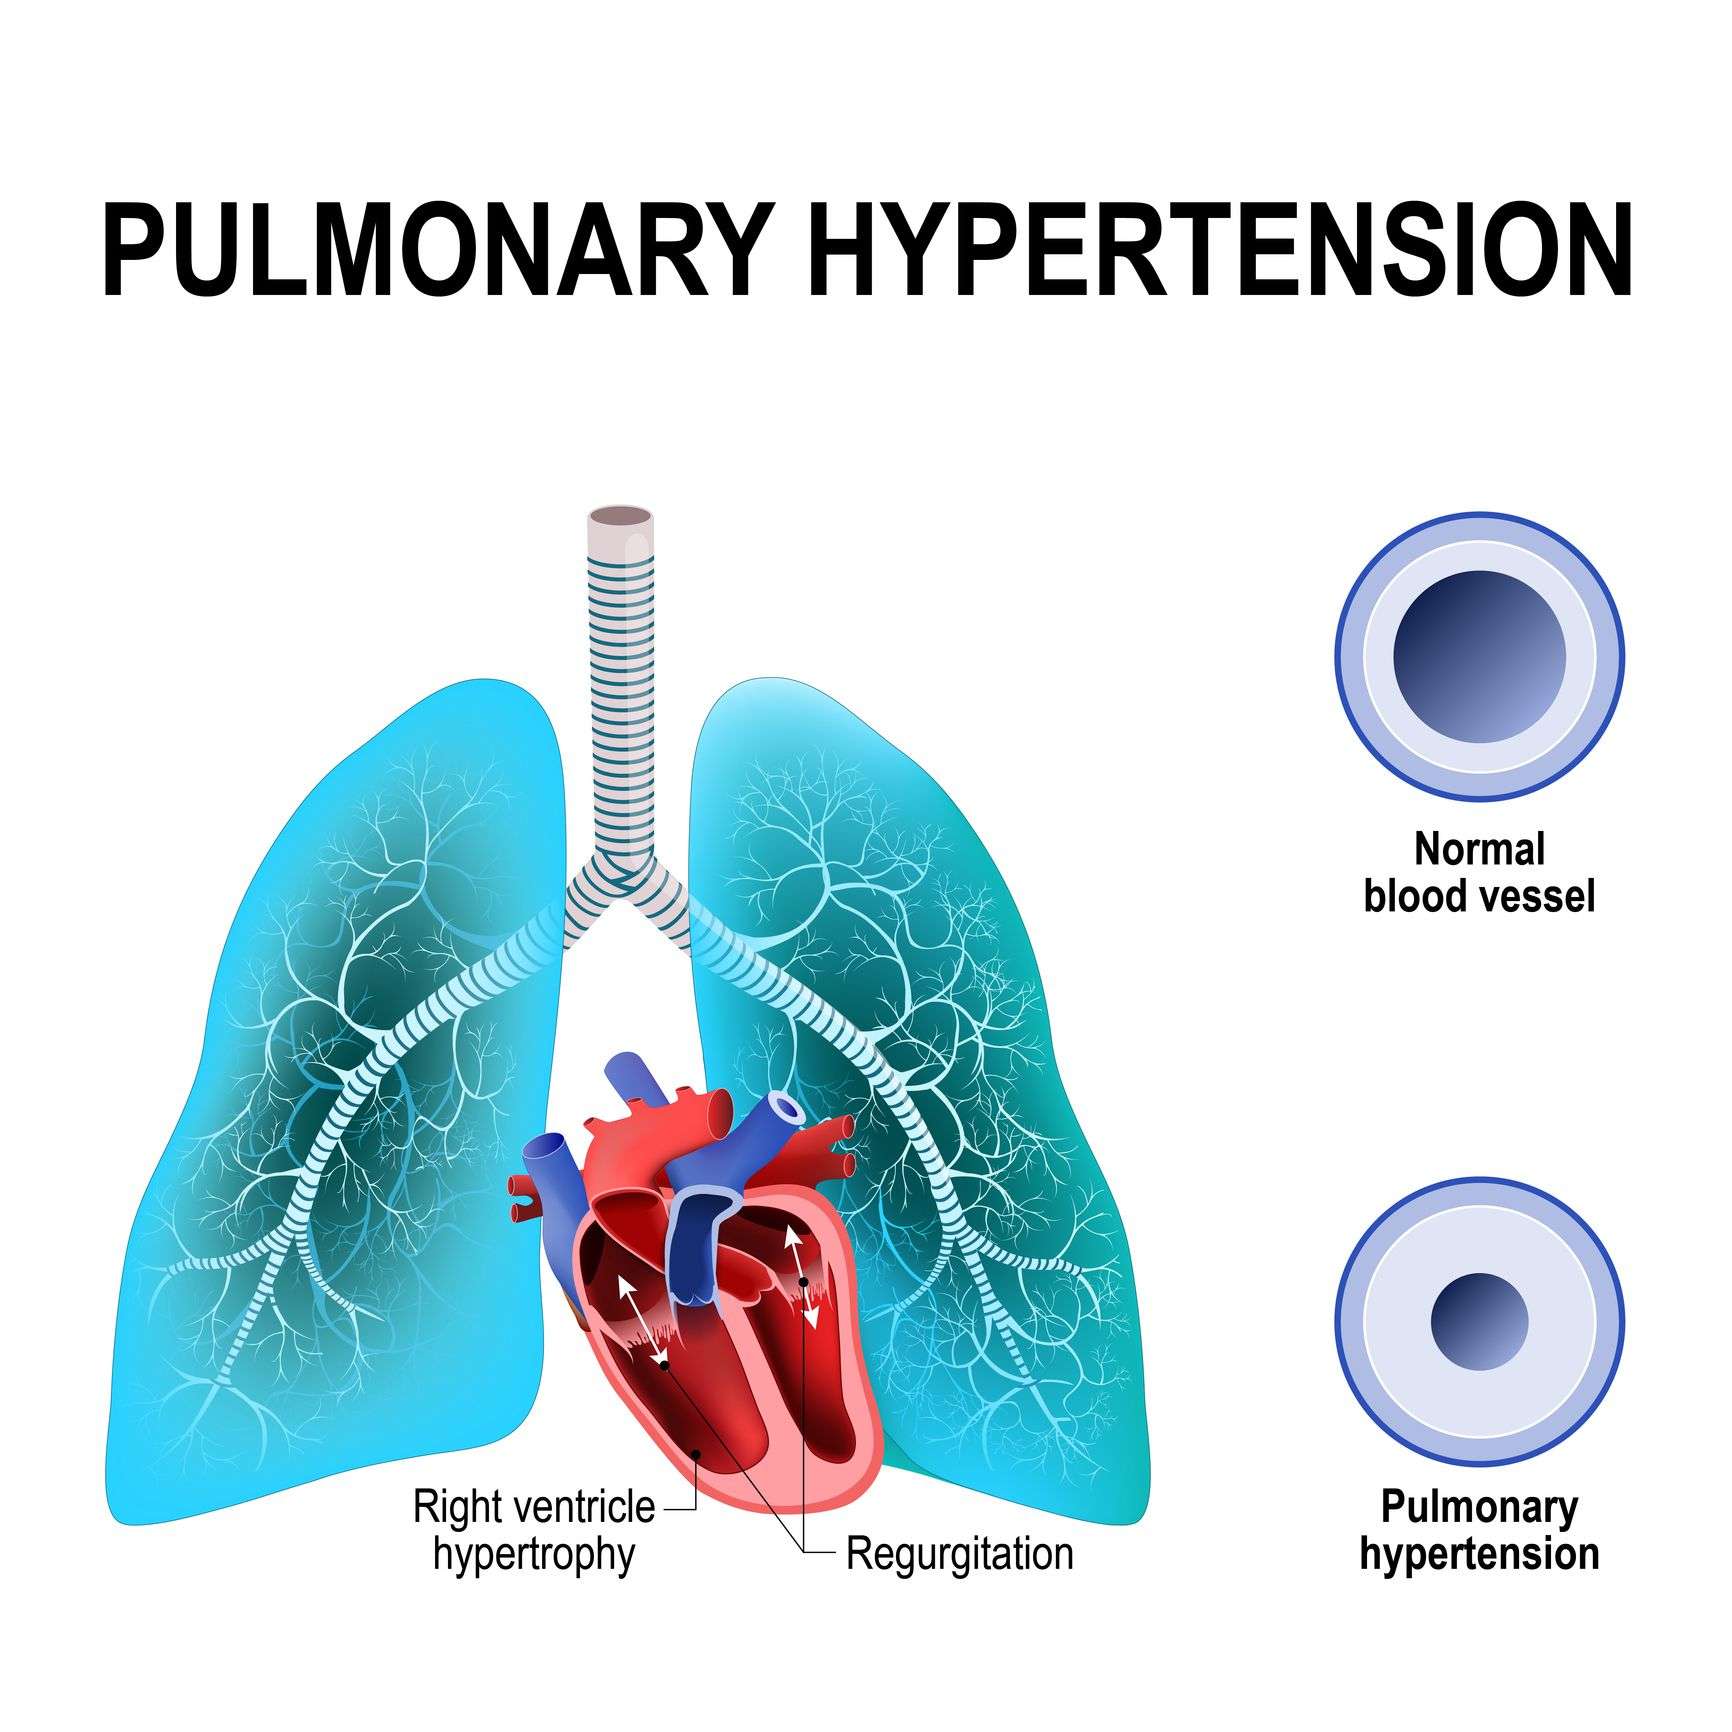 5 Types of Pulmonary Hypertension